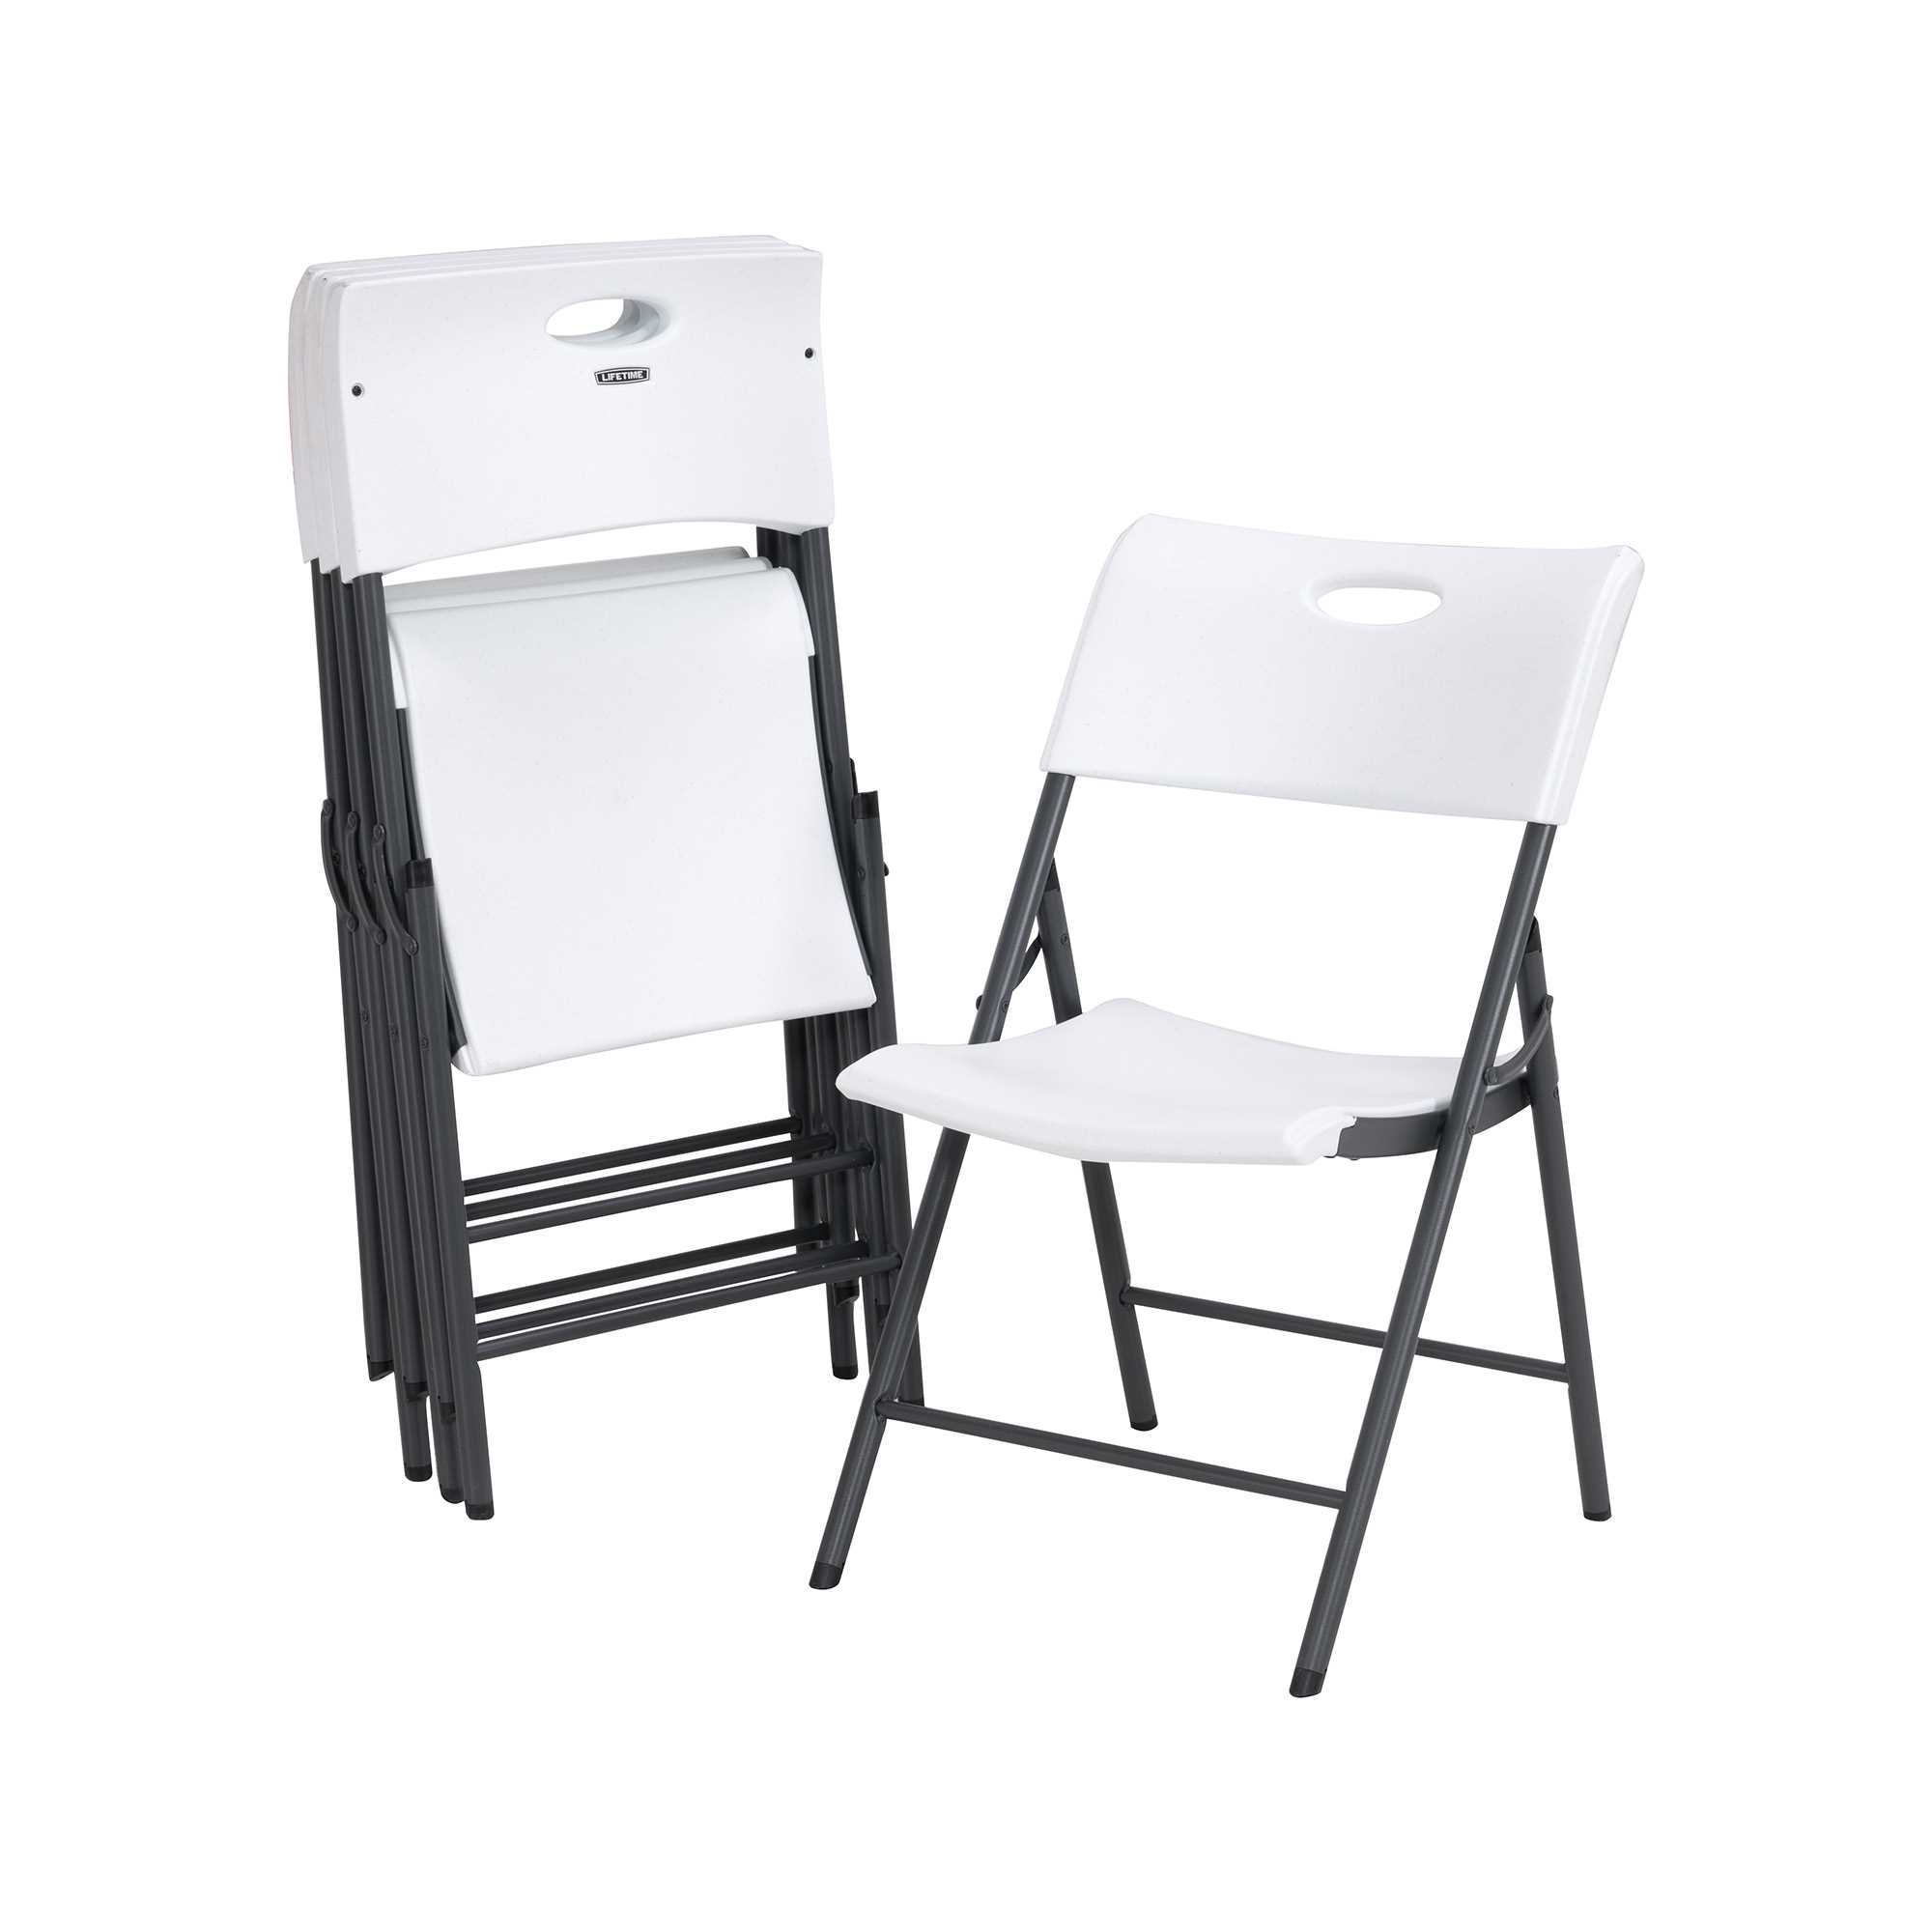 Light commercial folding chair (white)  